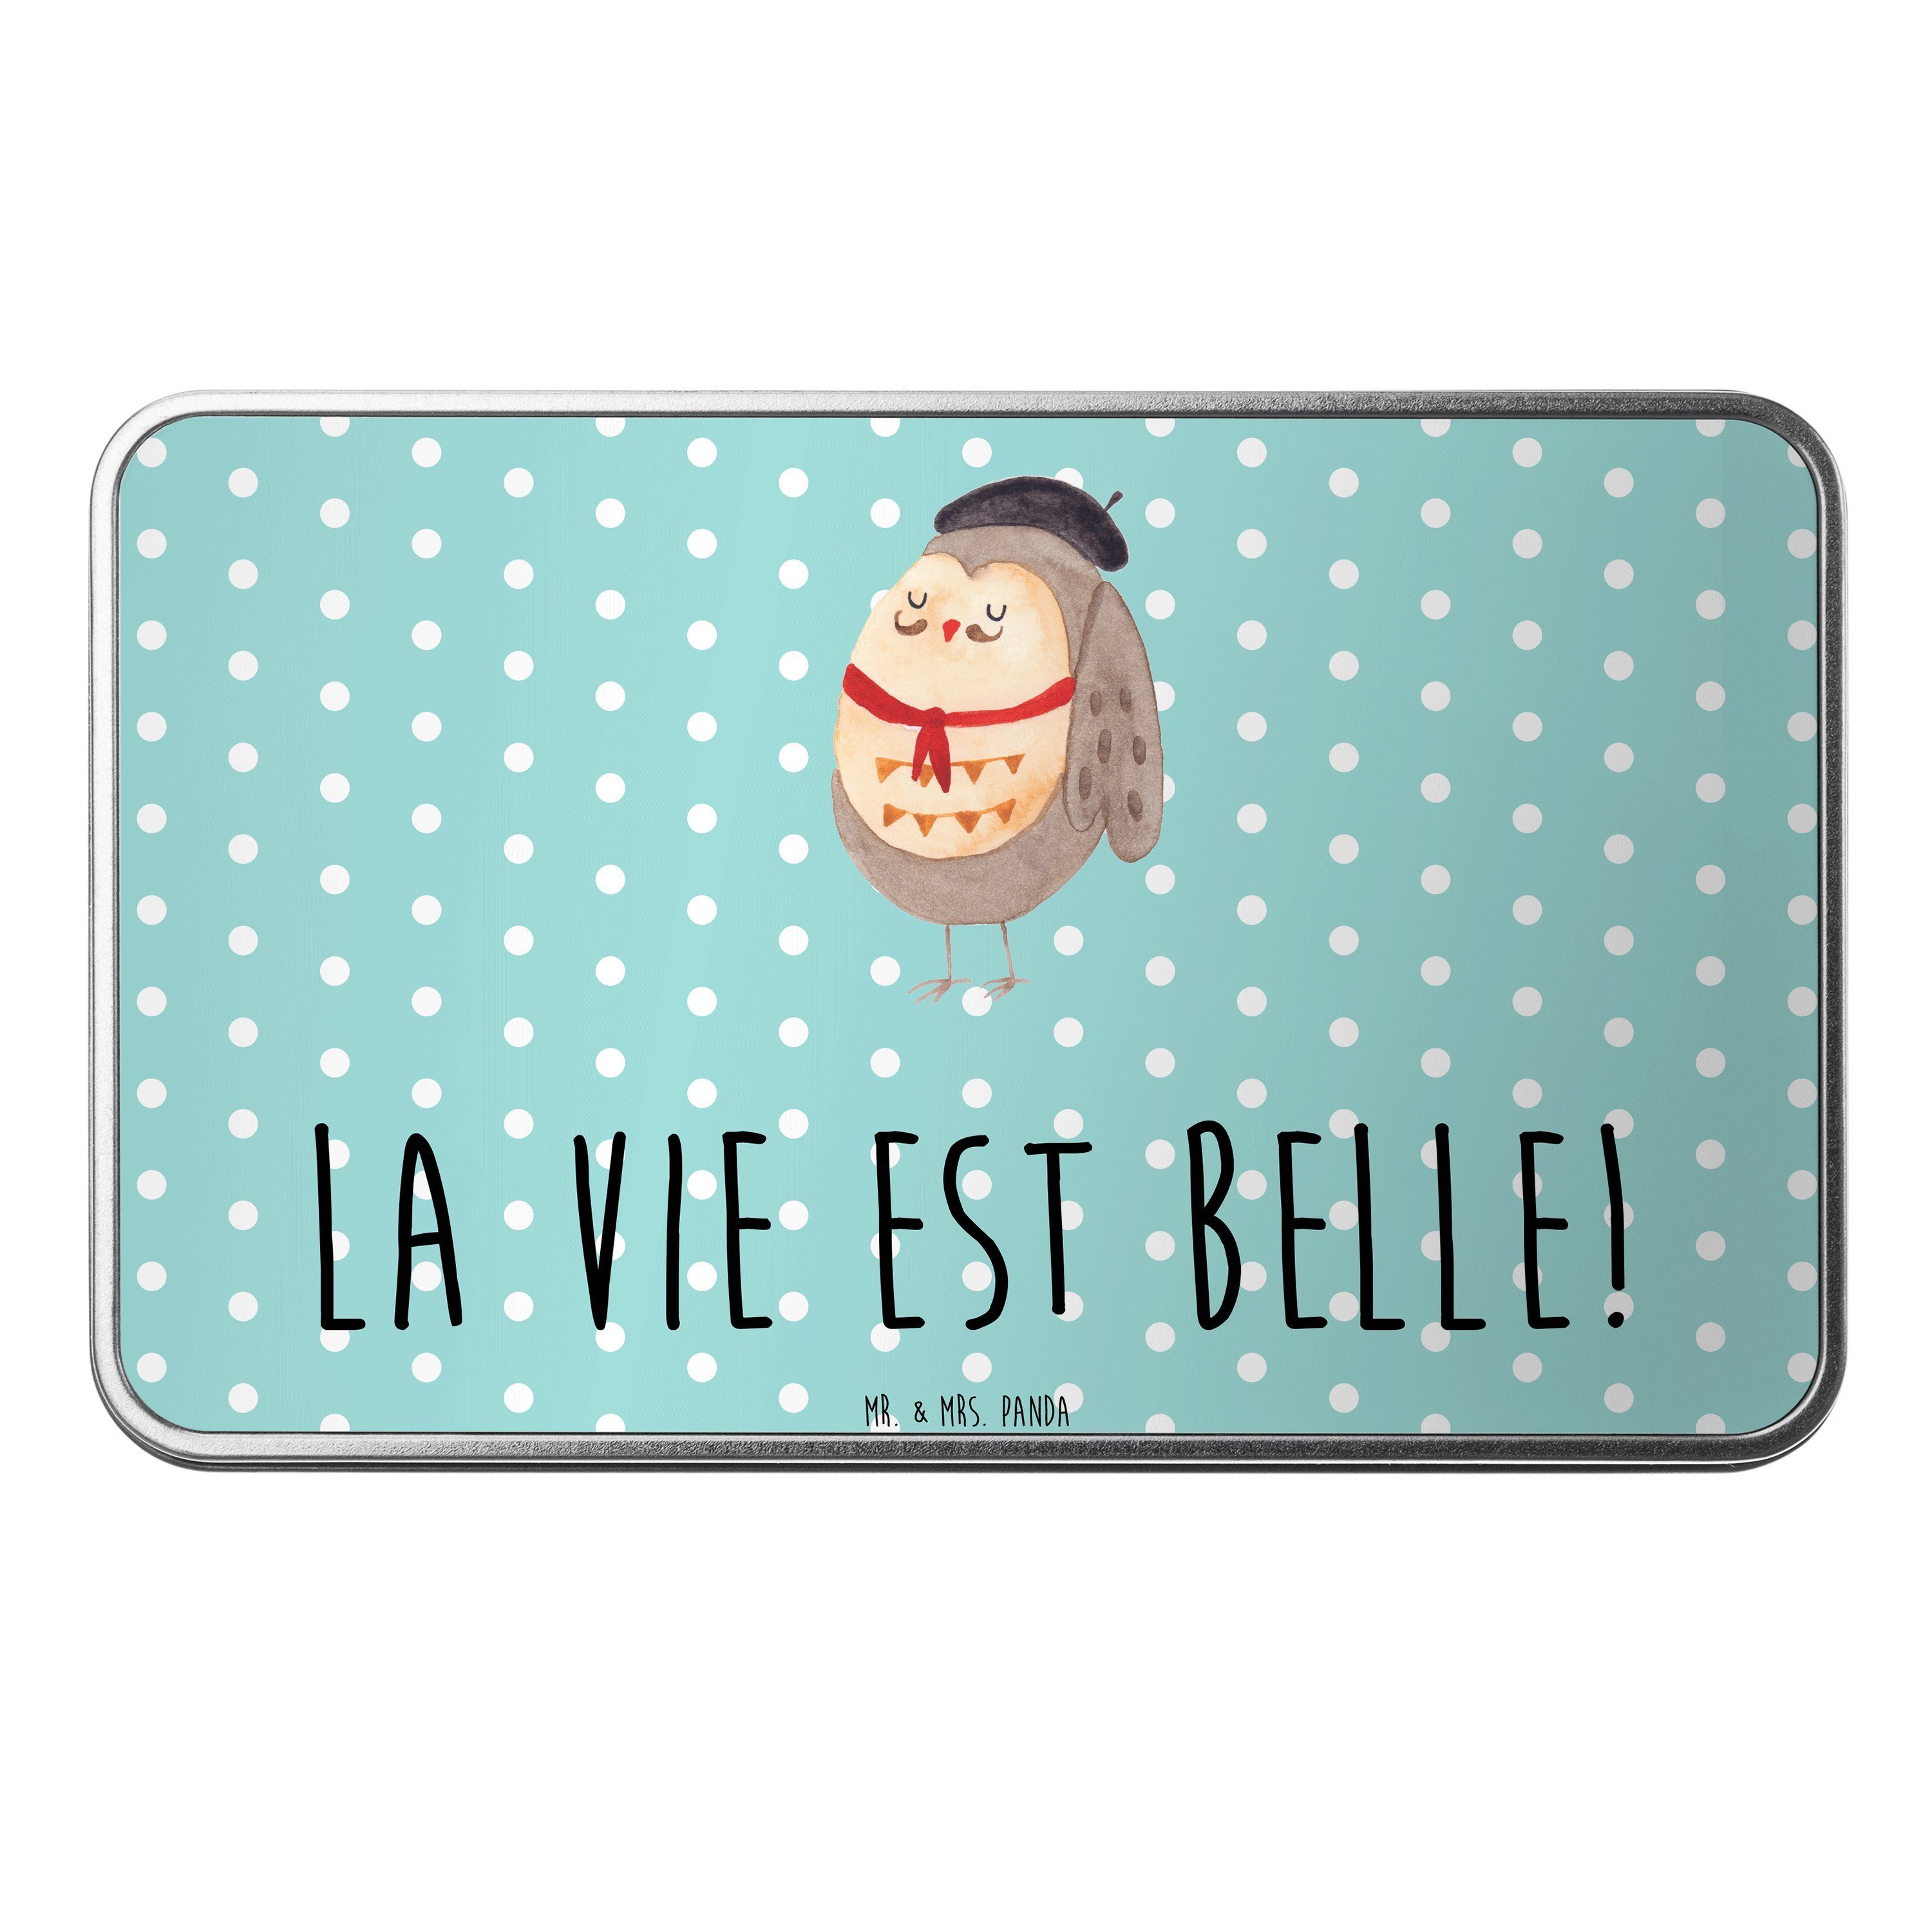 Mr. & vie belle, Panda Französisch St) est (1 La - Türkis Mrs. béret Pastell - Eule Geschenk, Dose